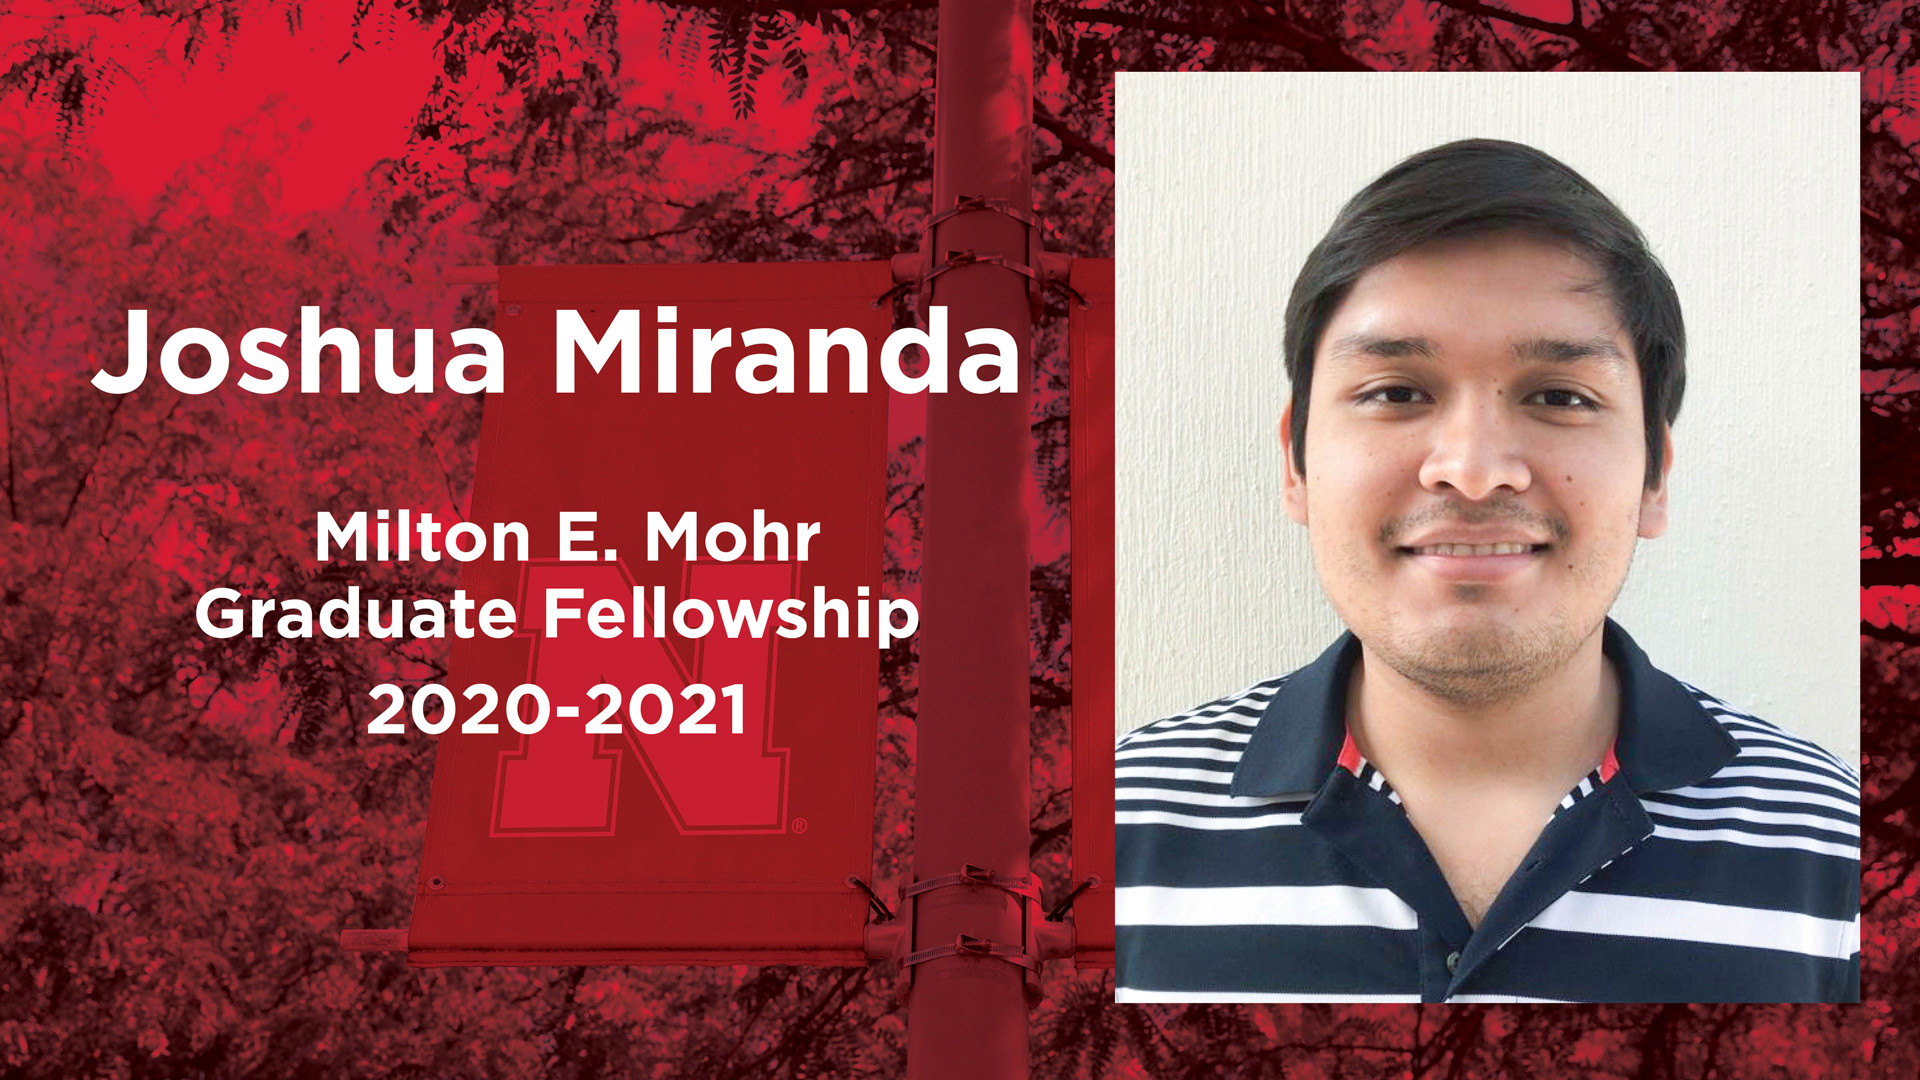 Joshua Miranda received a Milton E. Mohr Fellowship for 2020-2021.